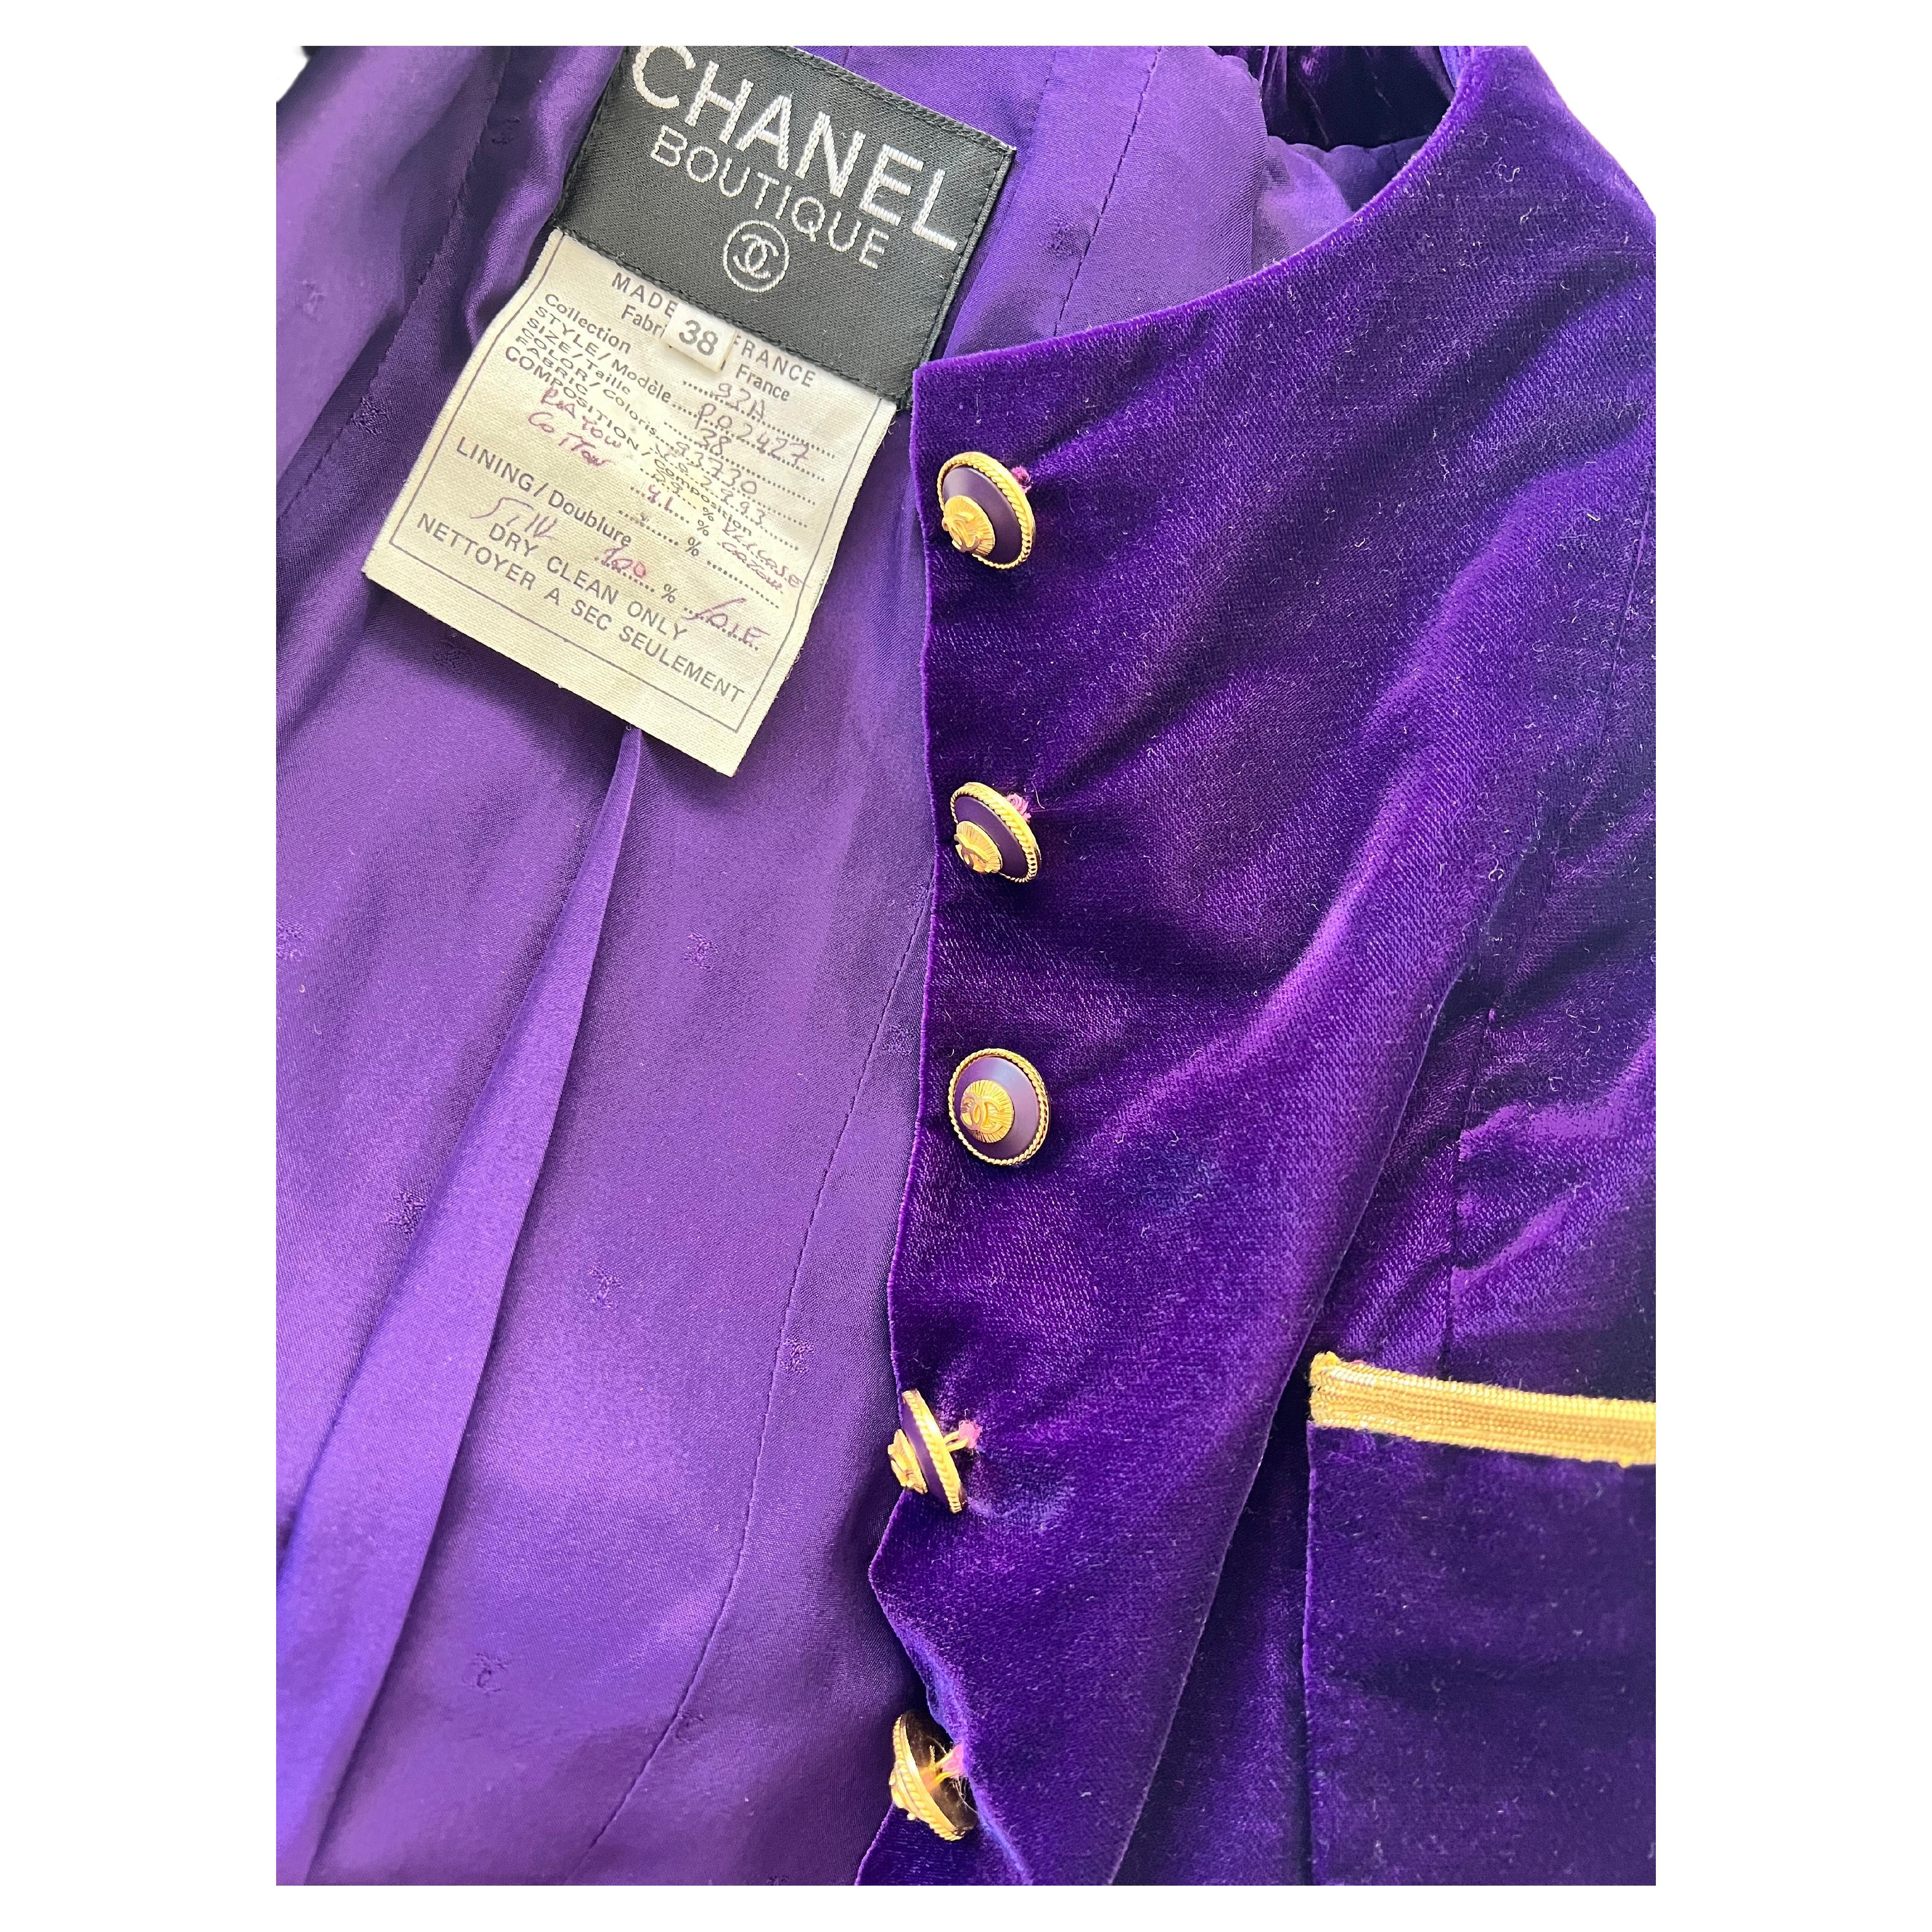 Chanel vintage 90's veste en veau violet avec des garnitures dorées et Flare dans le bas, plis dans le dos.
excellent état 

Sortez avec style grâce à cette superbe veste en velours violet Chanel des années 90, ornée d'une bordure dorée. Cette pièce